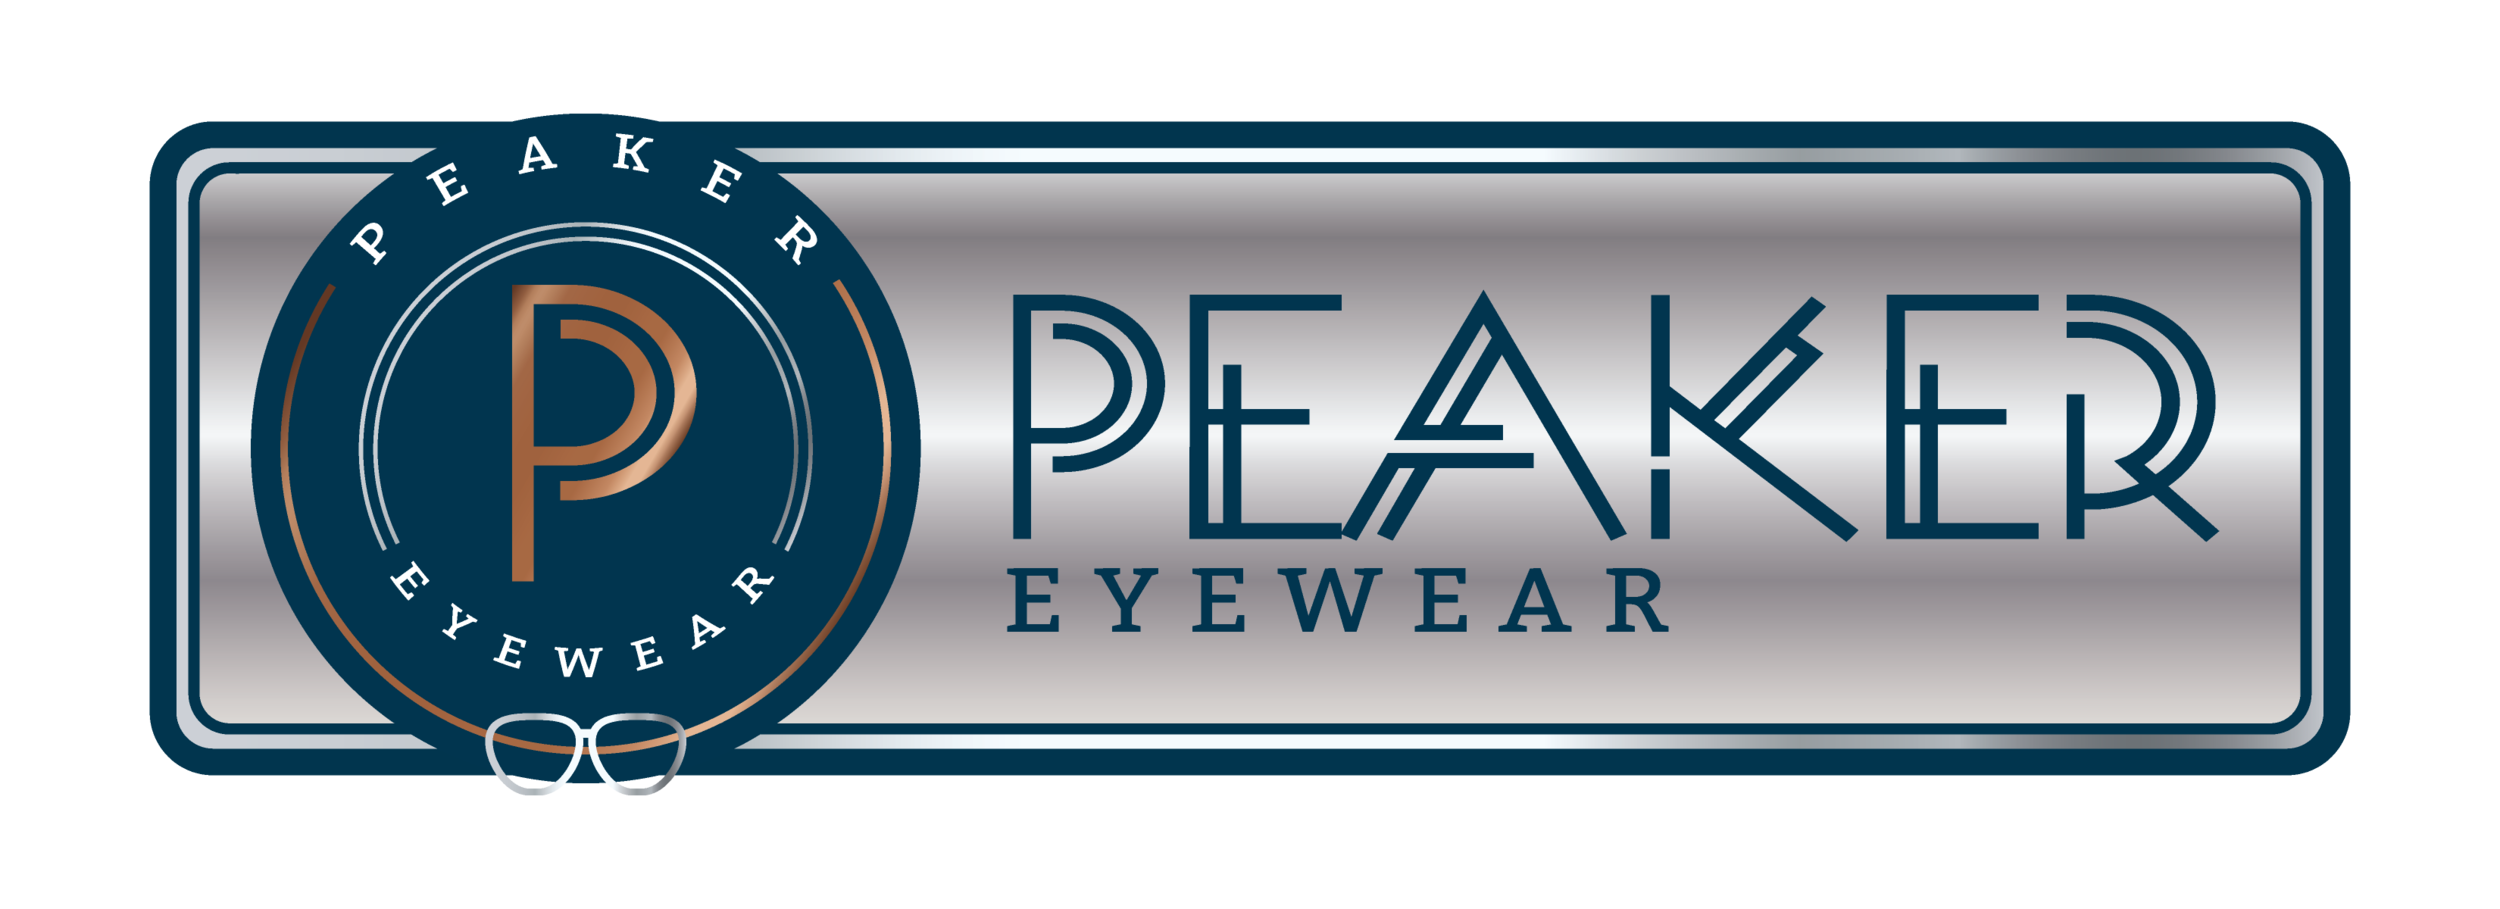 Peaker Eyewear